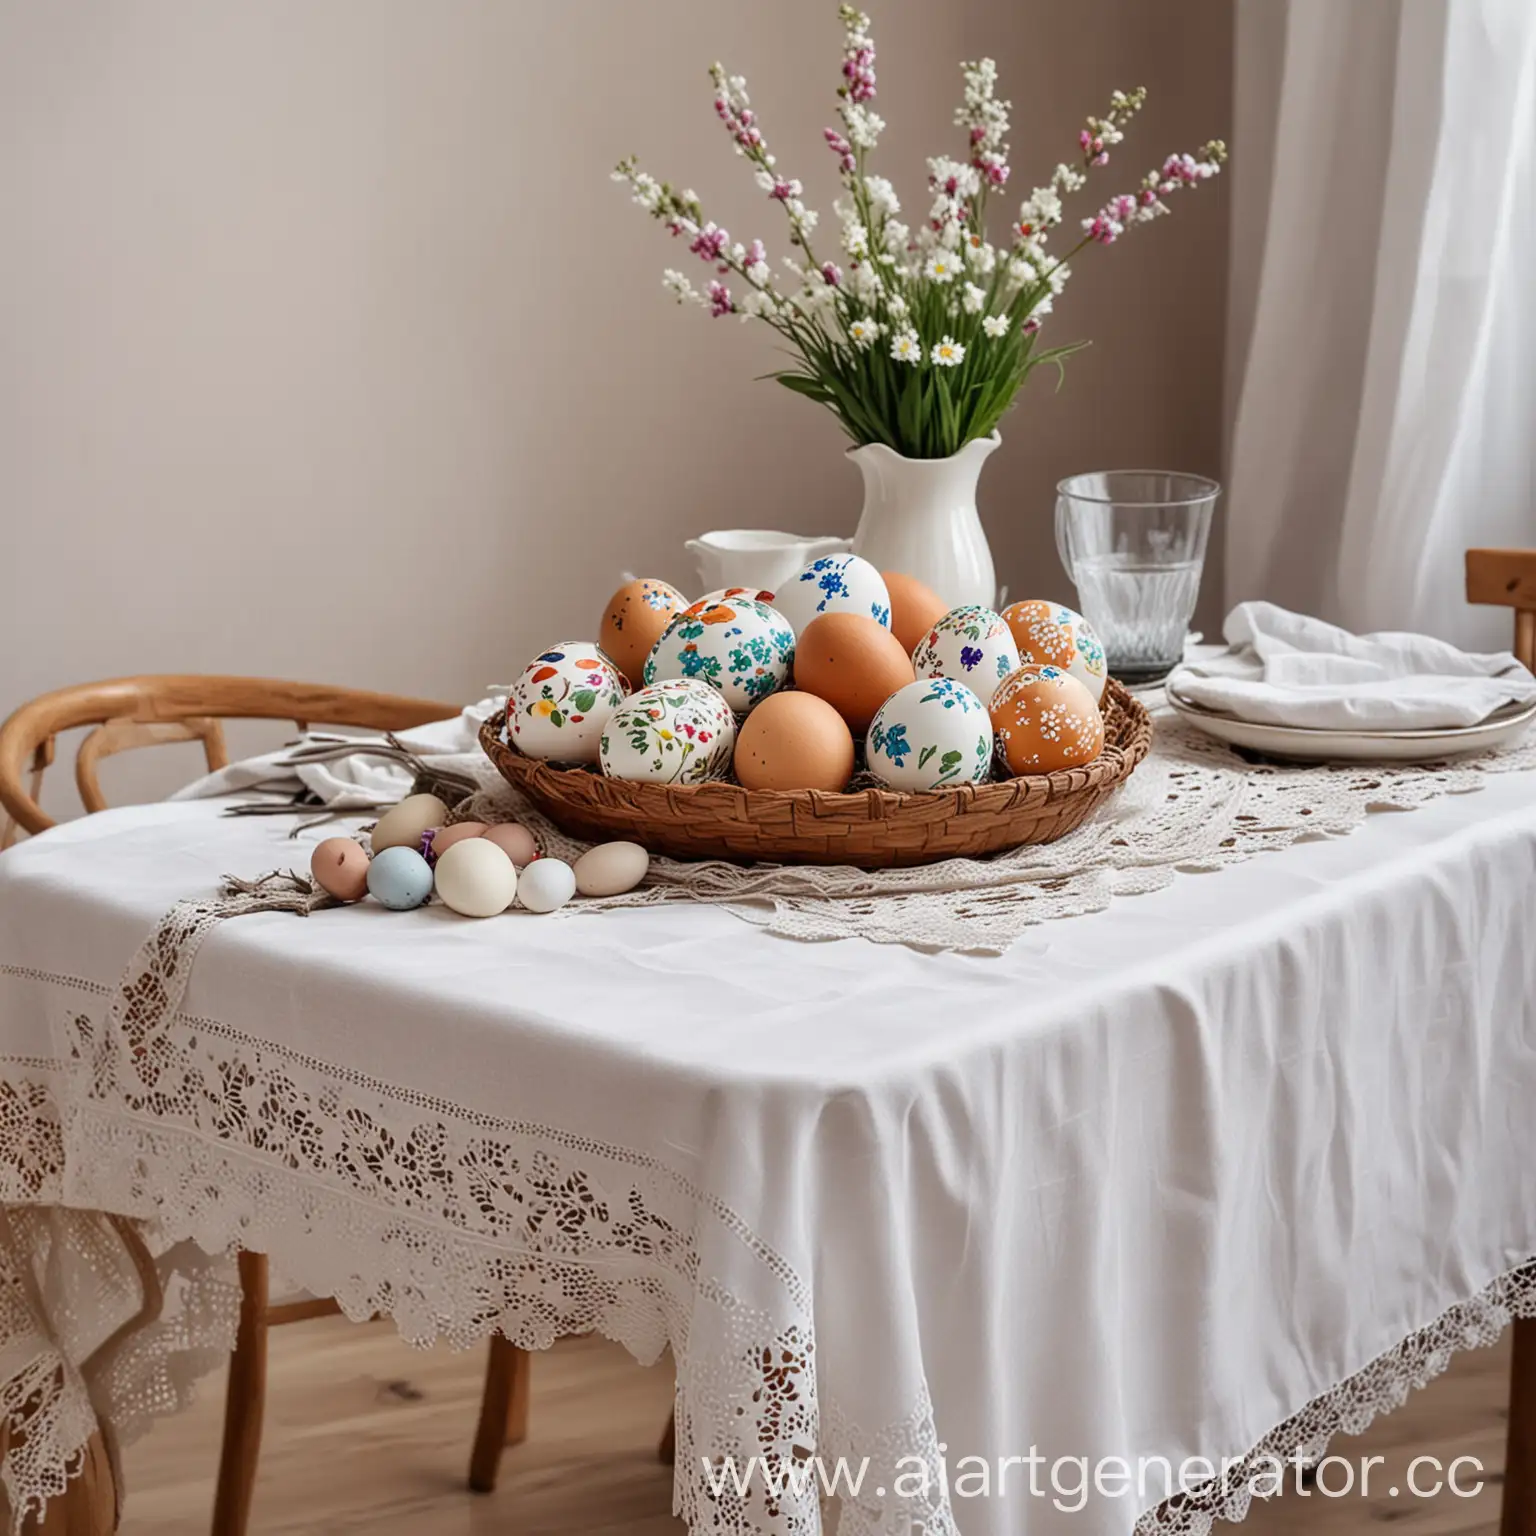 стол с белой скатертью,красивые расписные яйца,куличи праздник пасхи
